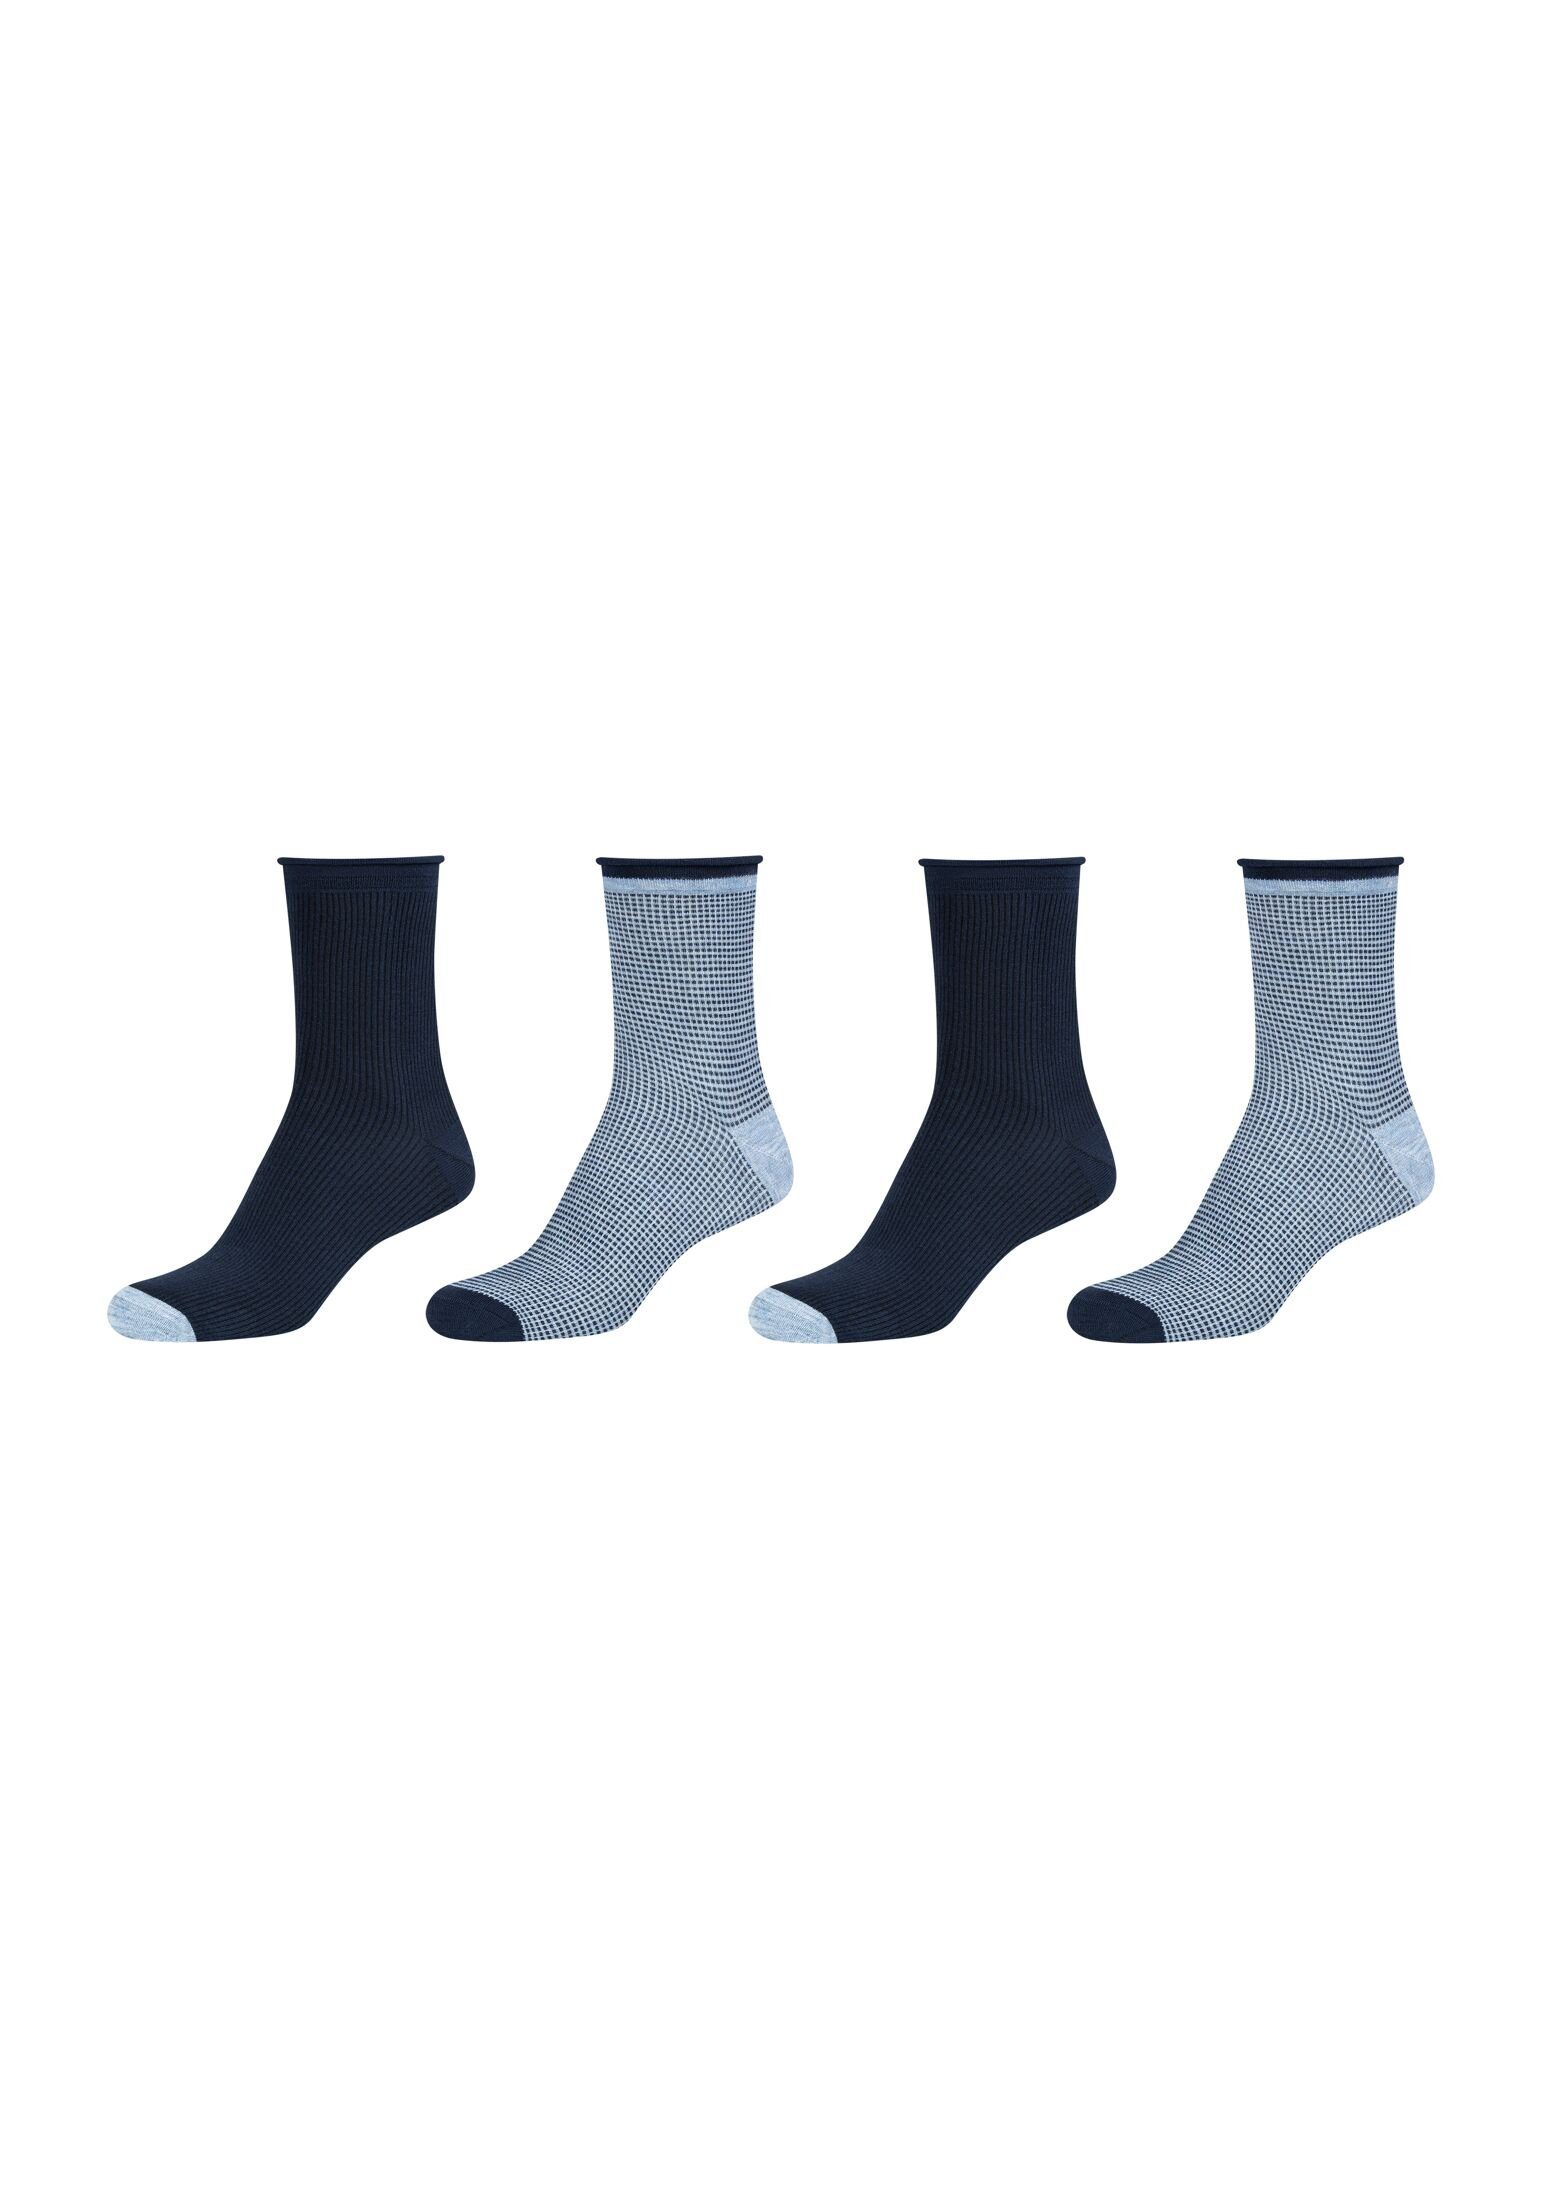 Camano Socken Socken ohne Hoher weiches Rollbündchen Pack, Gummidruck Tragekomfort: 4er